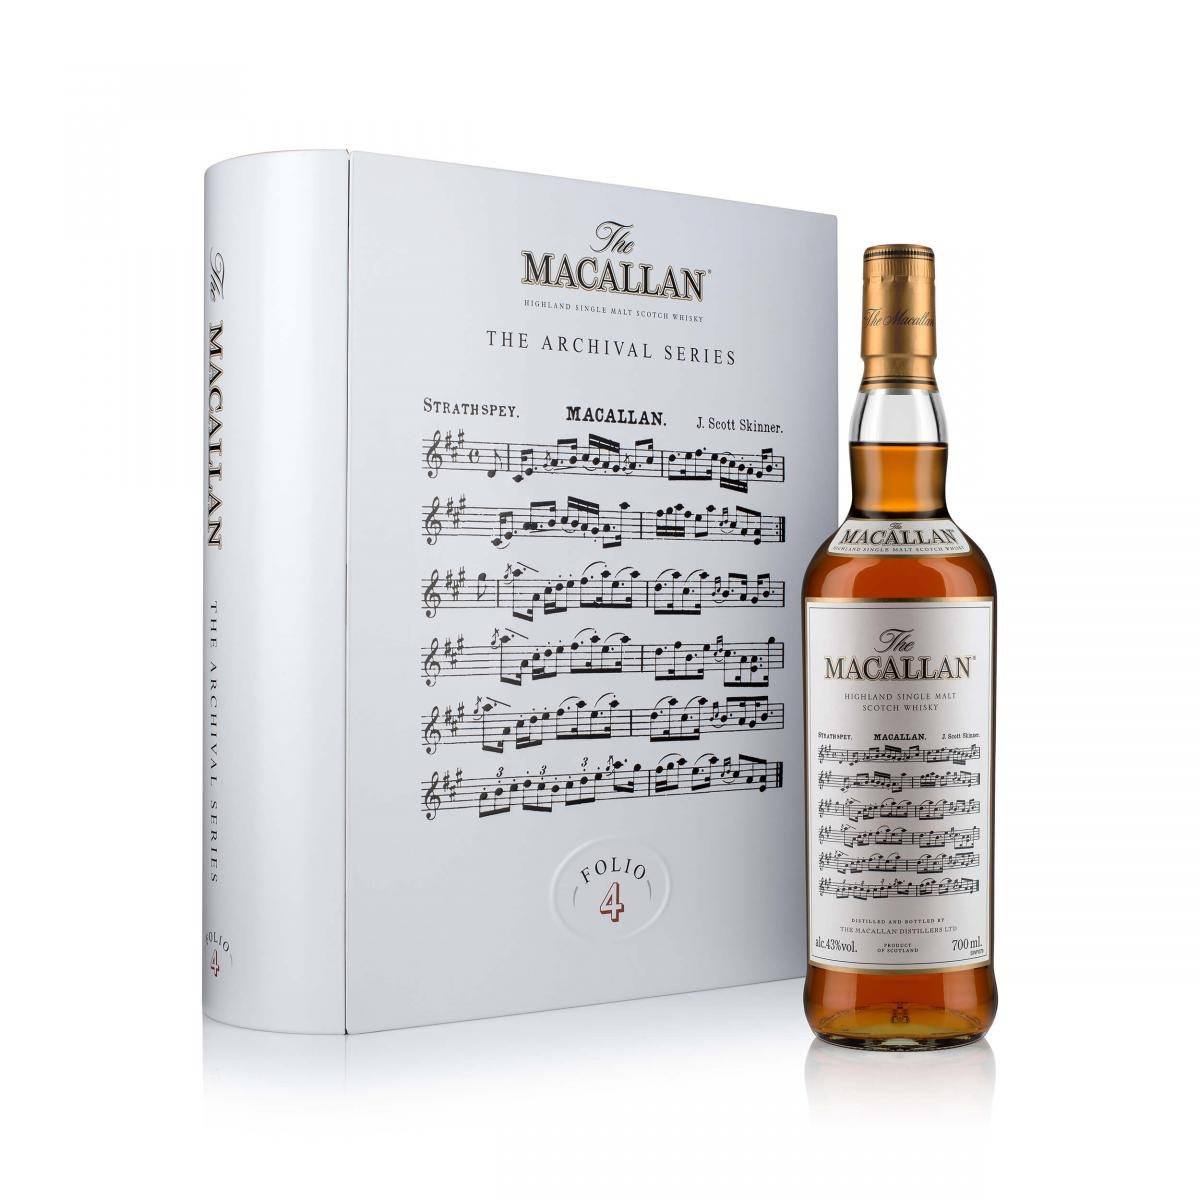 imagen 1 de The Macallan Archival Series Folio 4, el whisky más musical a subasta.